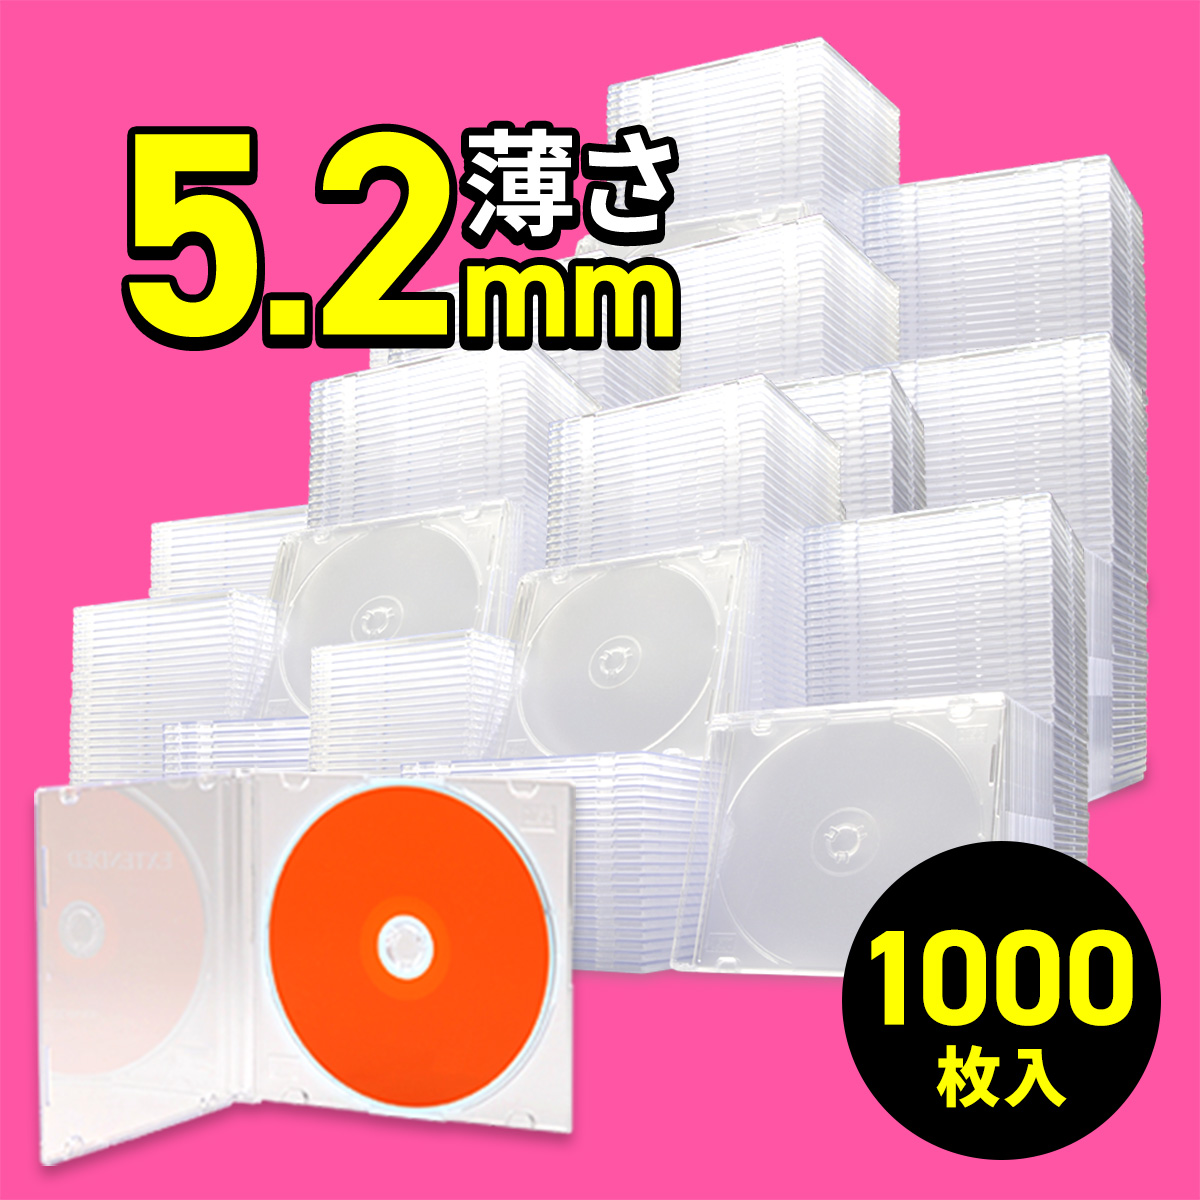 DVDケース CDケース 1000枚セット ブルーレイケース Blu-ray ジュエルケース プラケース スリム 薄型 5.2mm CD DVD BD 1枚収納 200-FCD031-1000